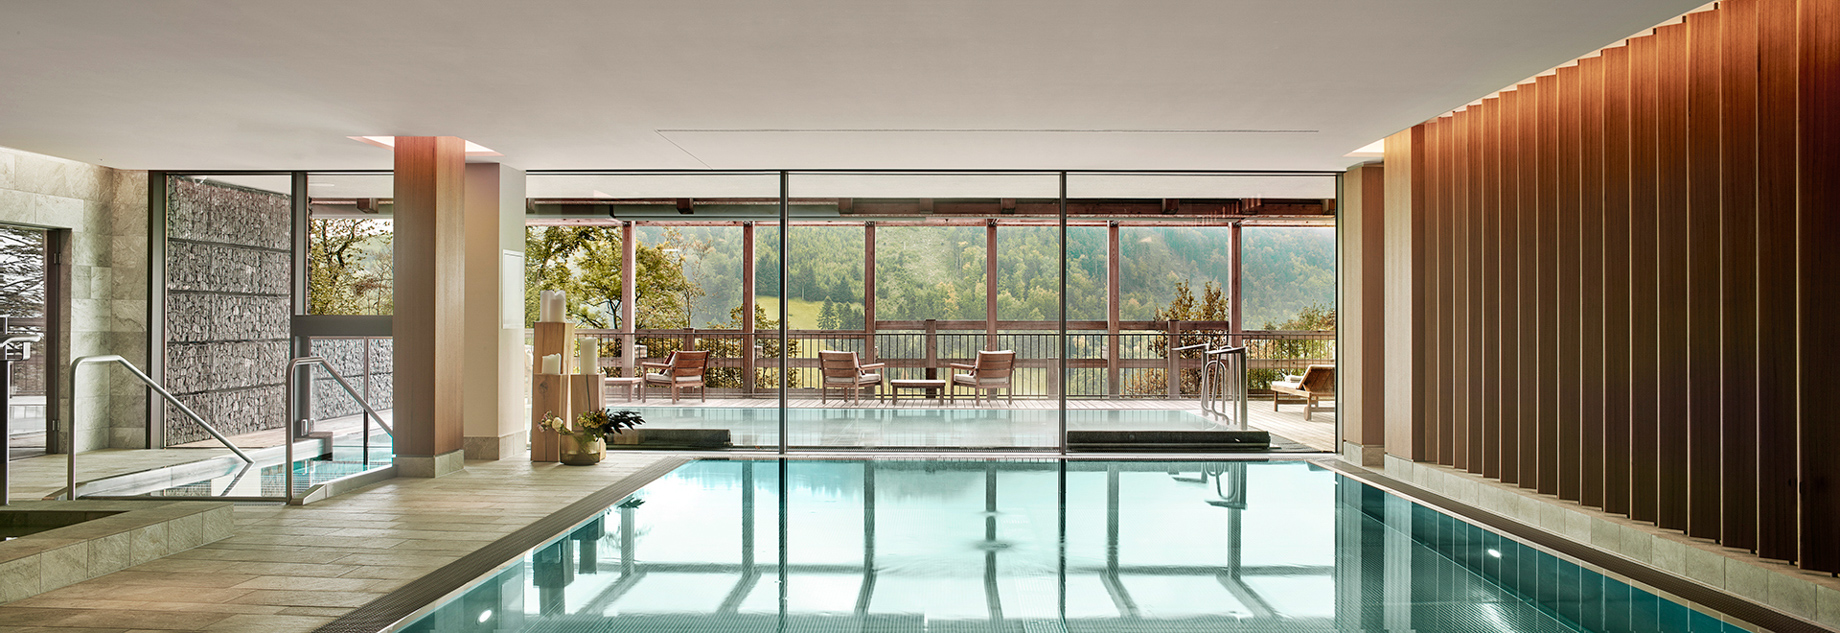 Waldhotel – Burgenstock Hotels & Resort – Obburgen, Switzerland – Spa Wet Area Indoor Pool